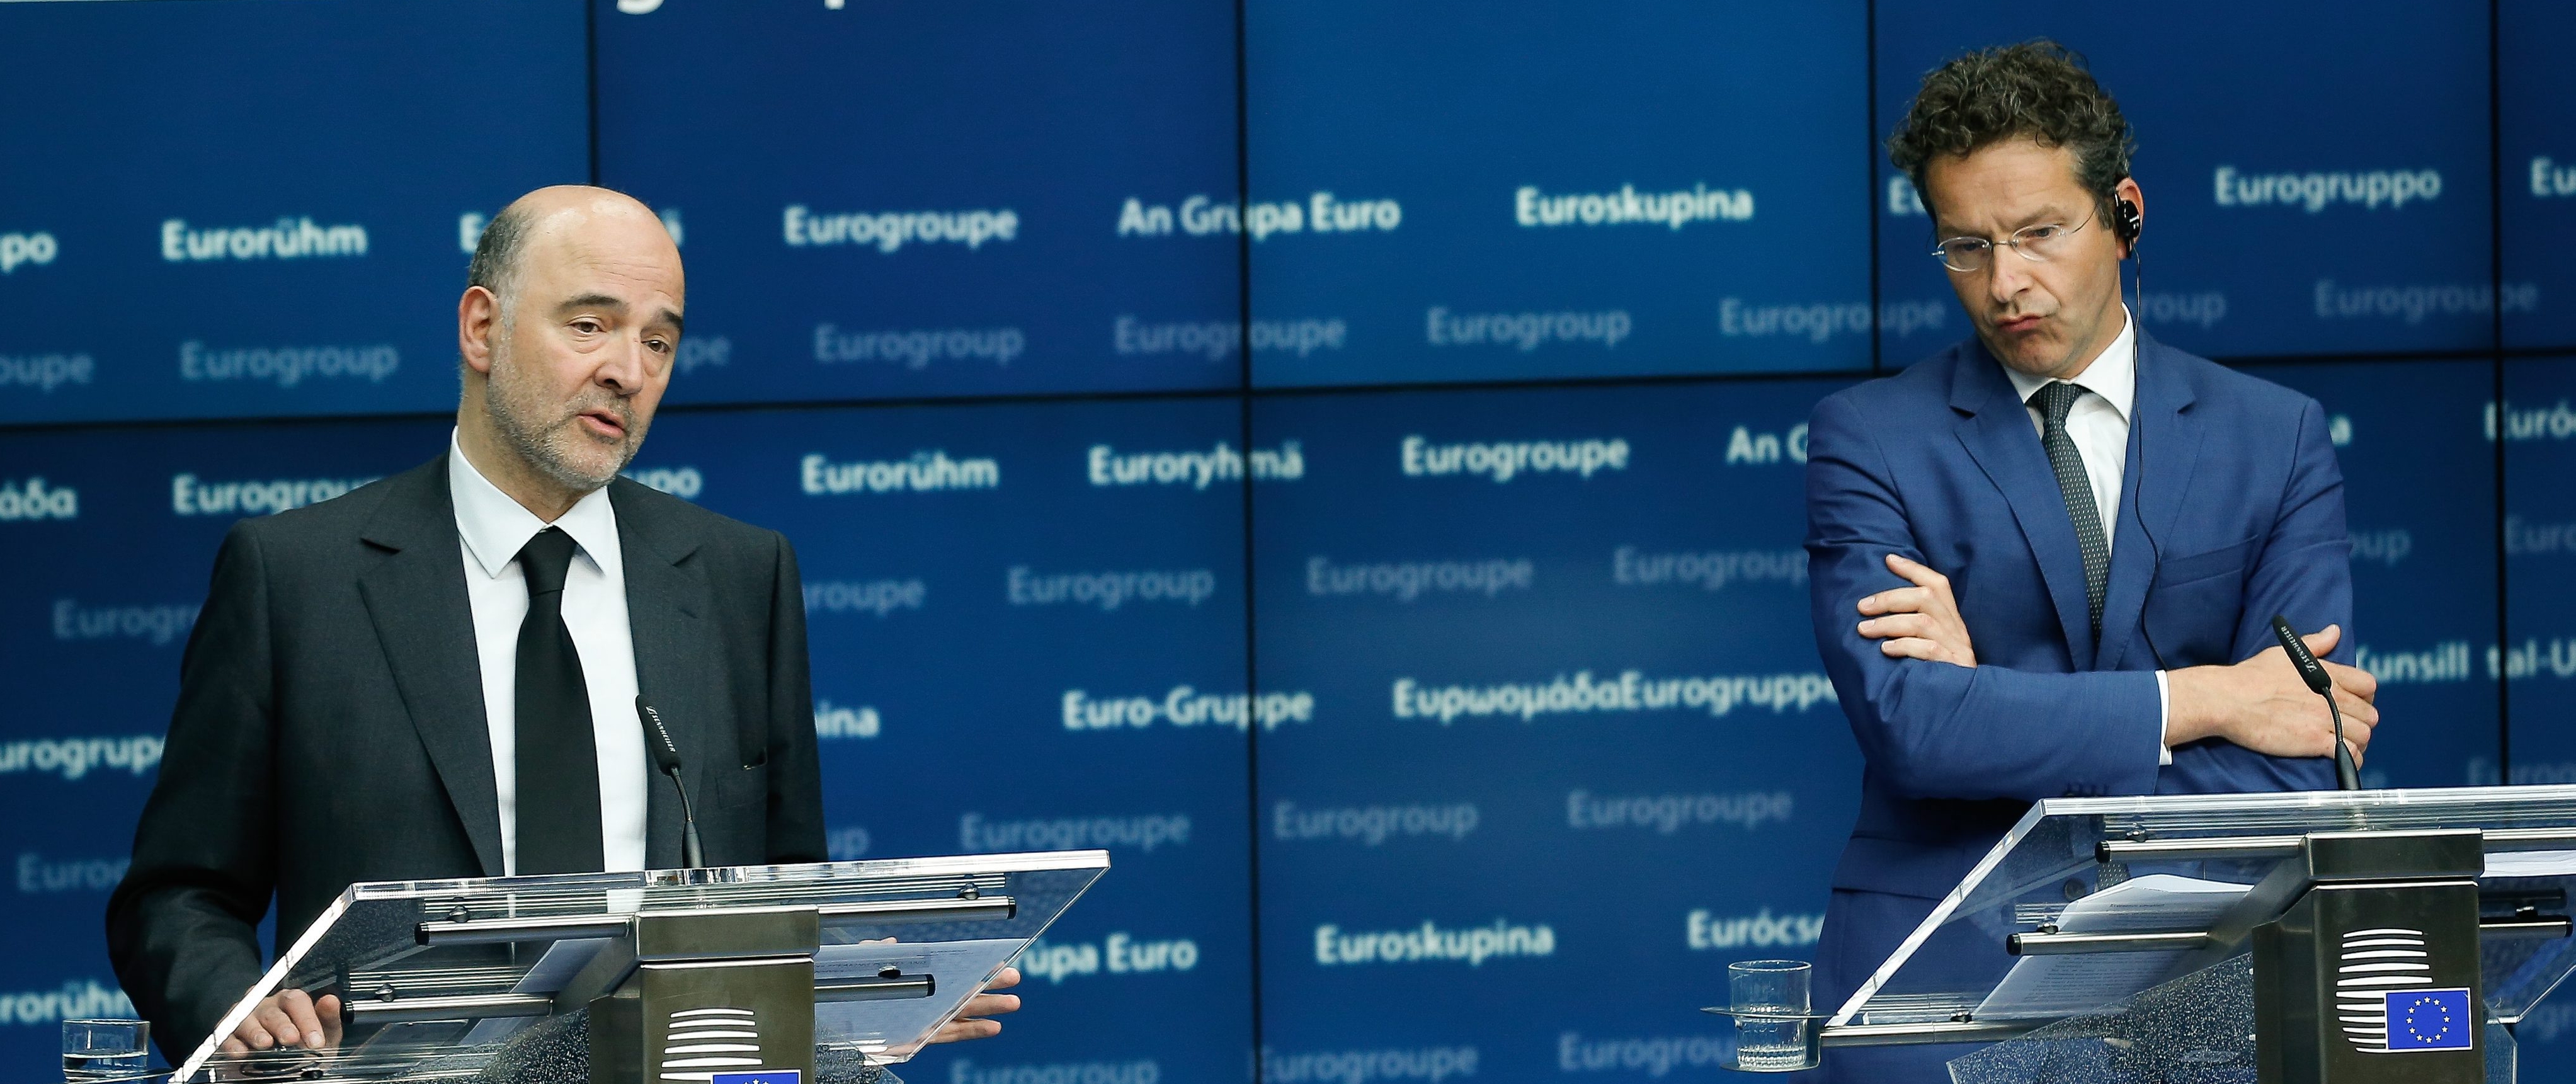 Χωρίς συμφωνία ολοκληρώθηκαν μετά τα μεσάνυχτα οι συνομιλίες για το ελληνικό χρέος στο Eurogroup